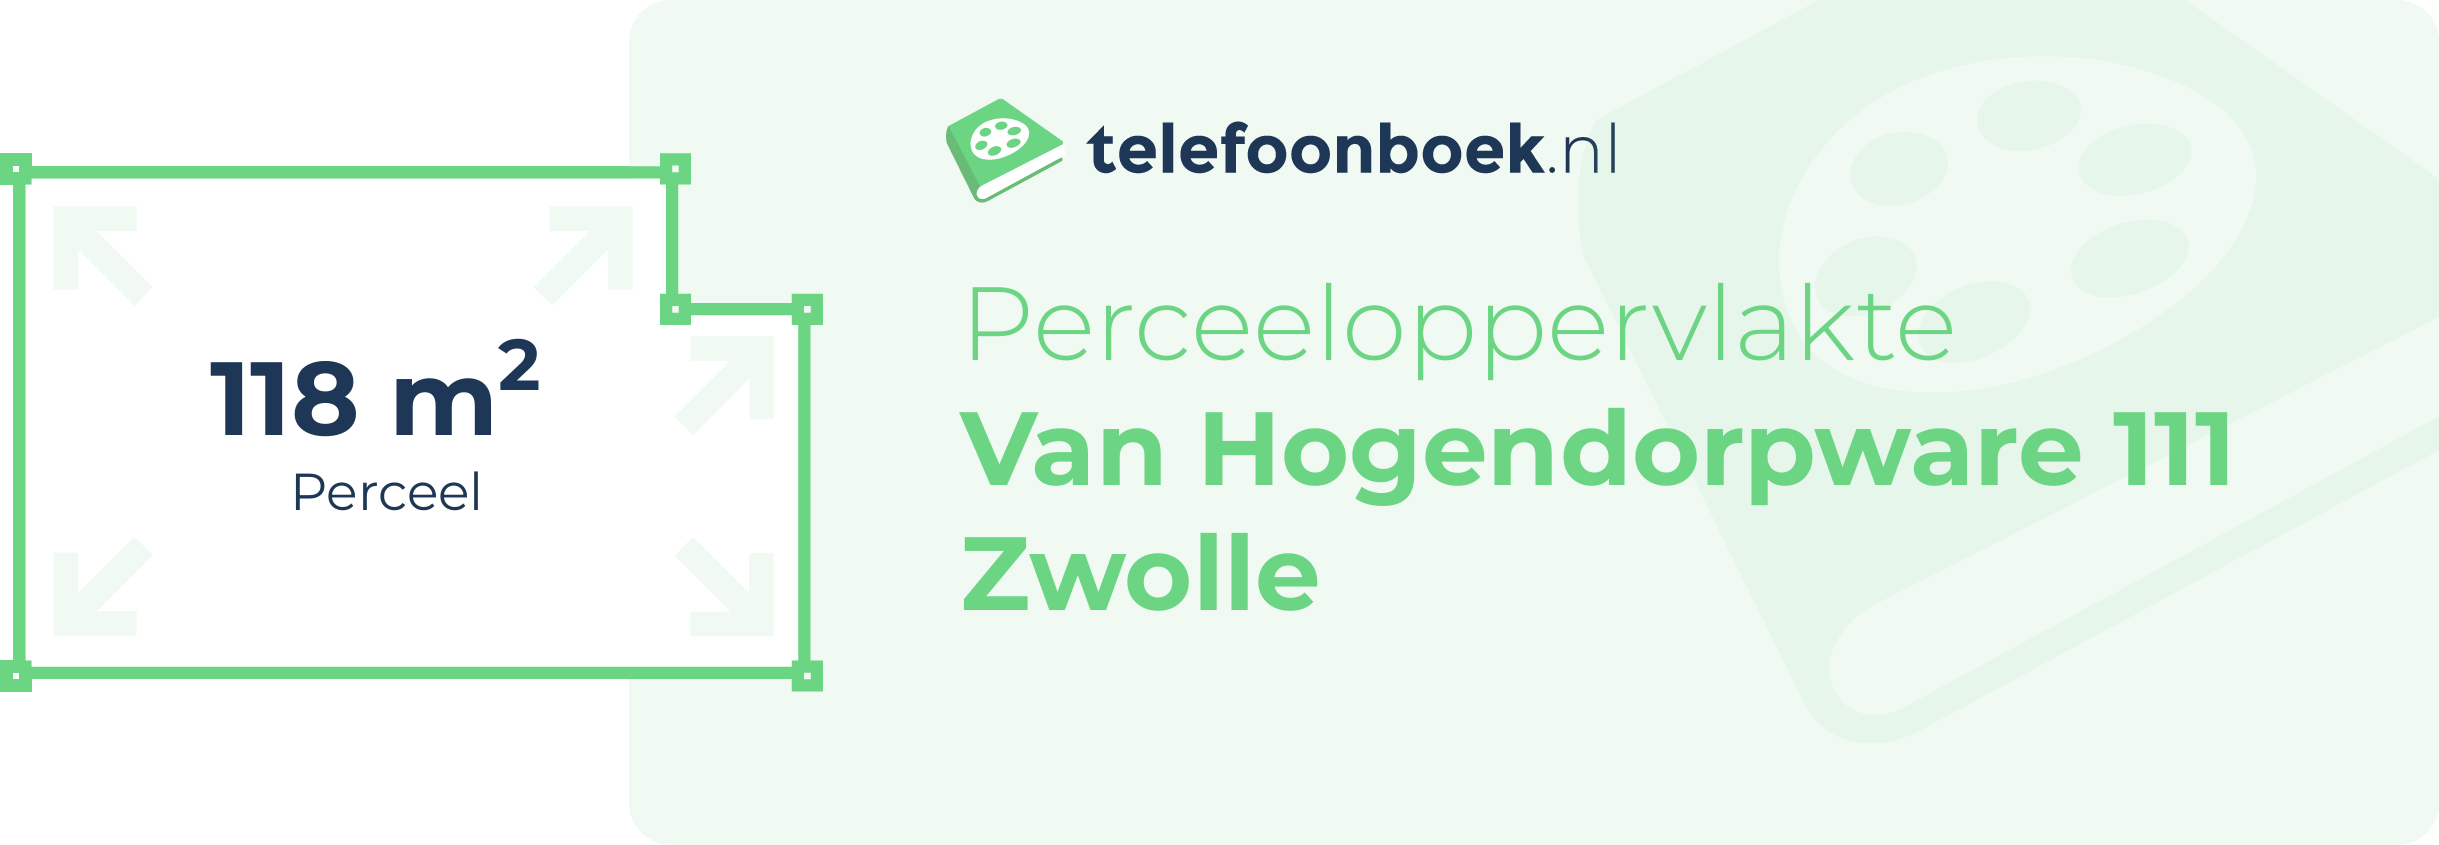 Perceeloppervlakte Van Hogendorpware 111 Zwolle